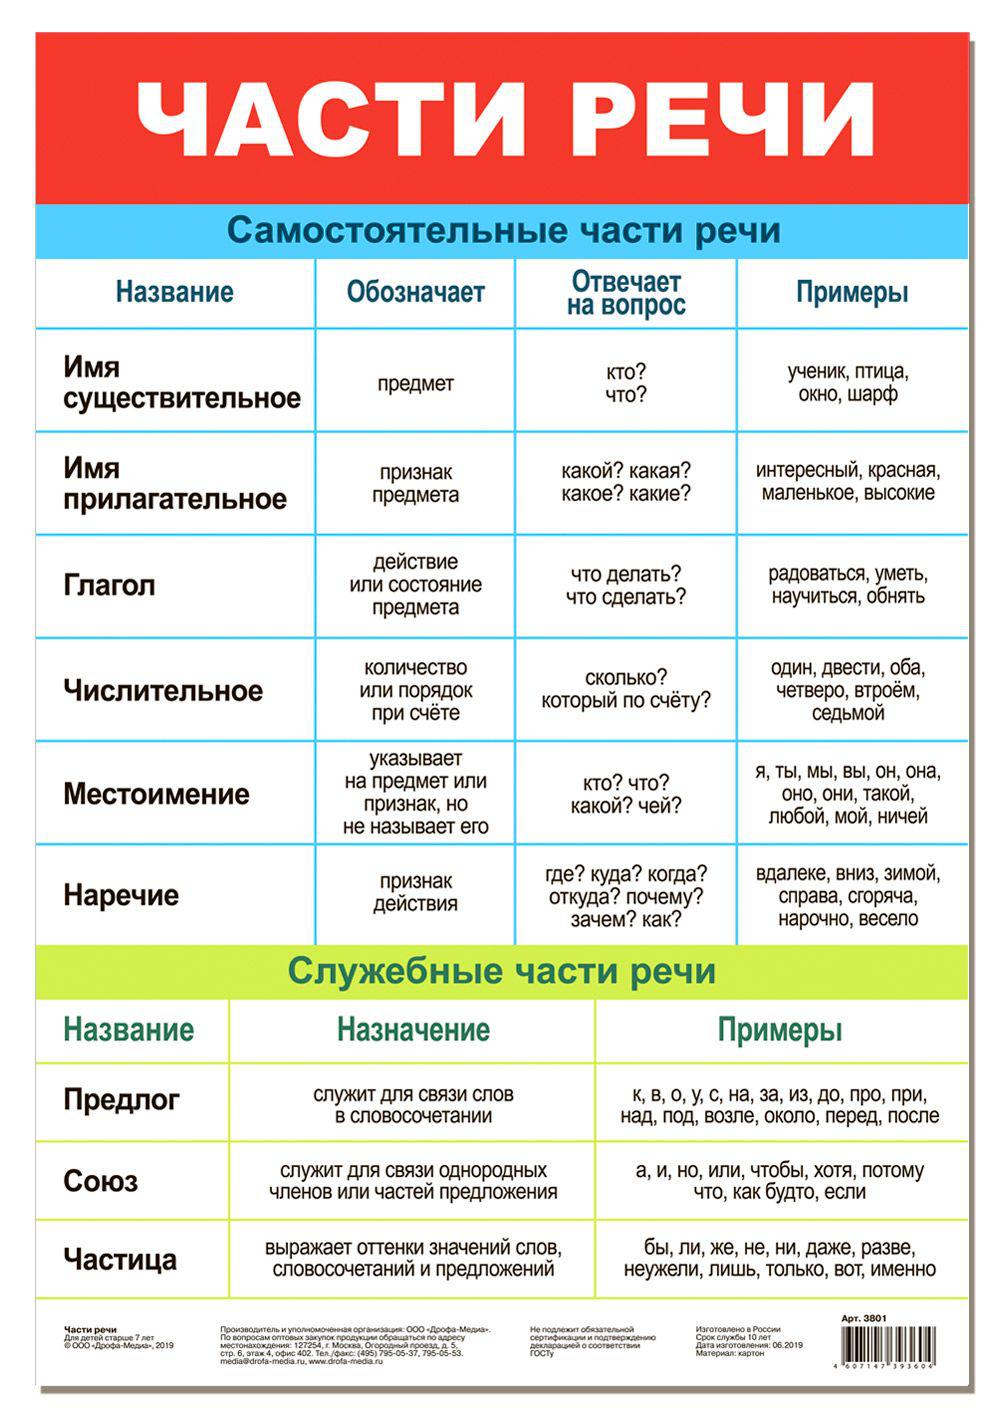 Все части речи в русском языке таблица